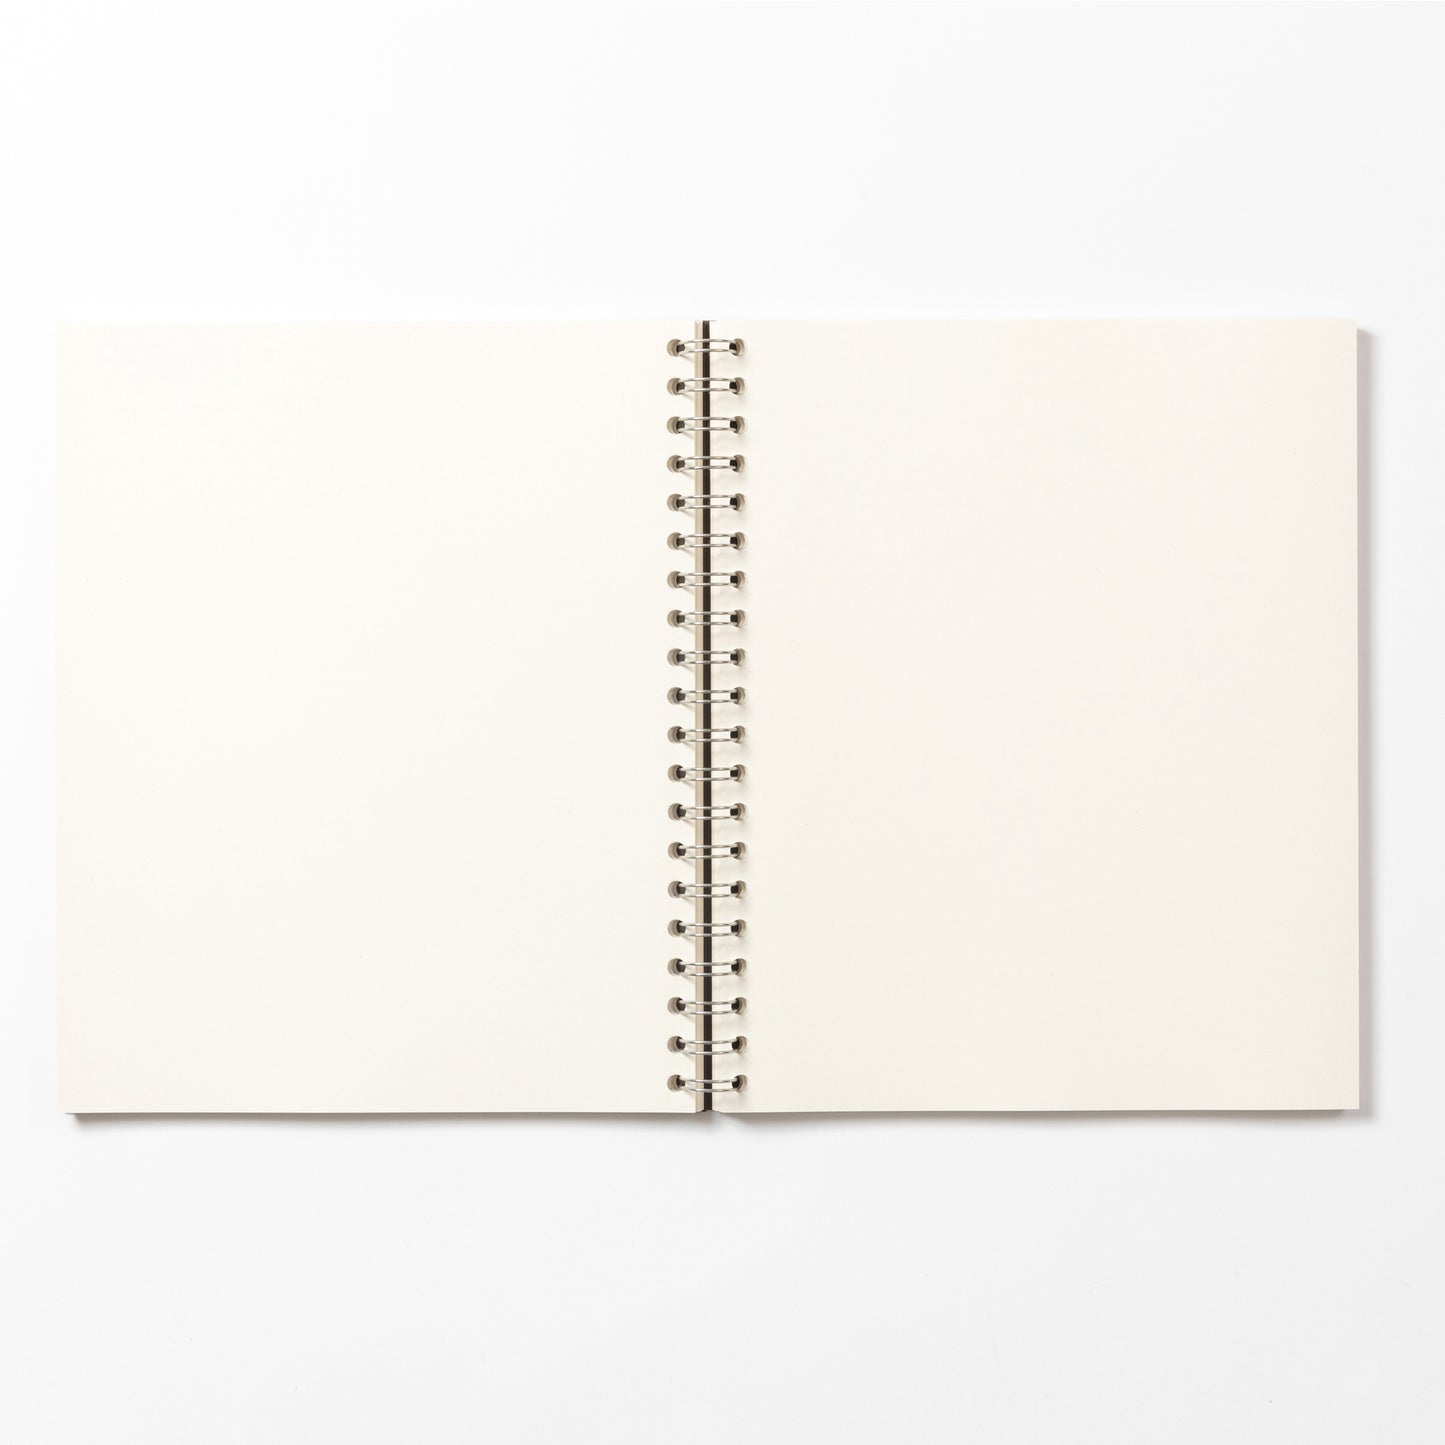 Vibrant Wirebound Notebook